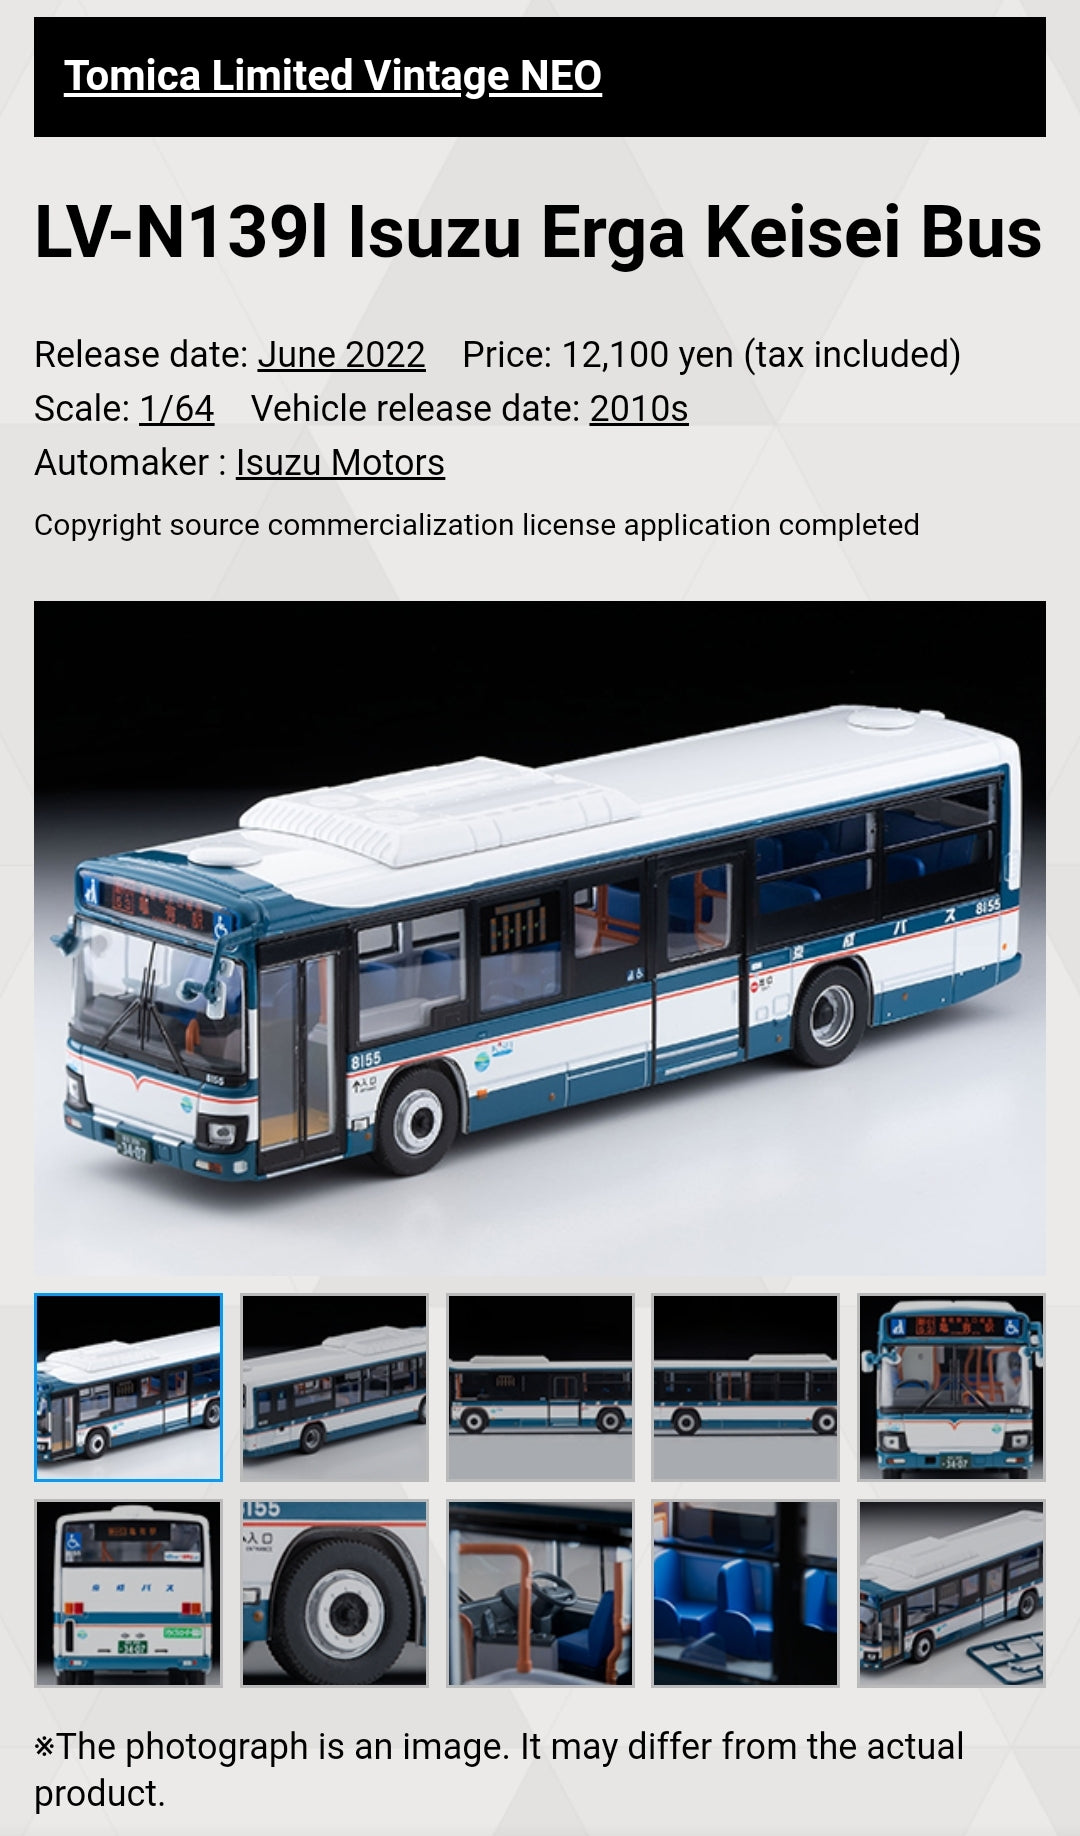 Tomica Limited Vintage Neo LV-N139l Isuzu Erga Keisei Bus